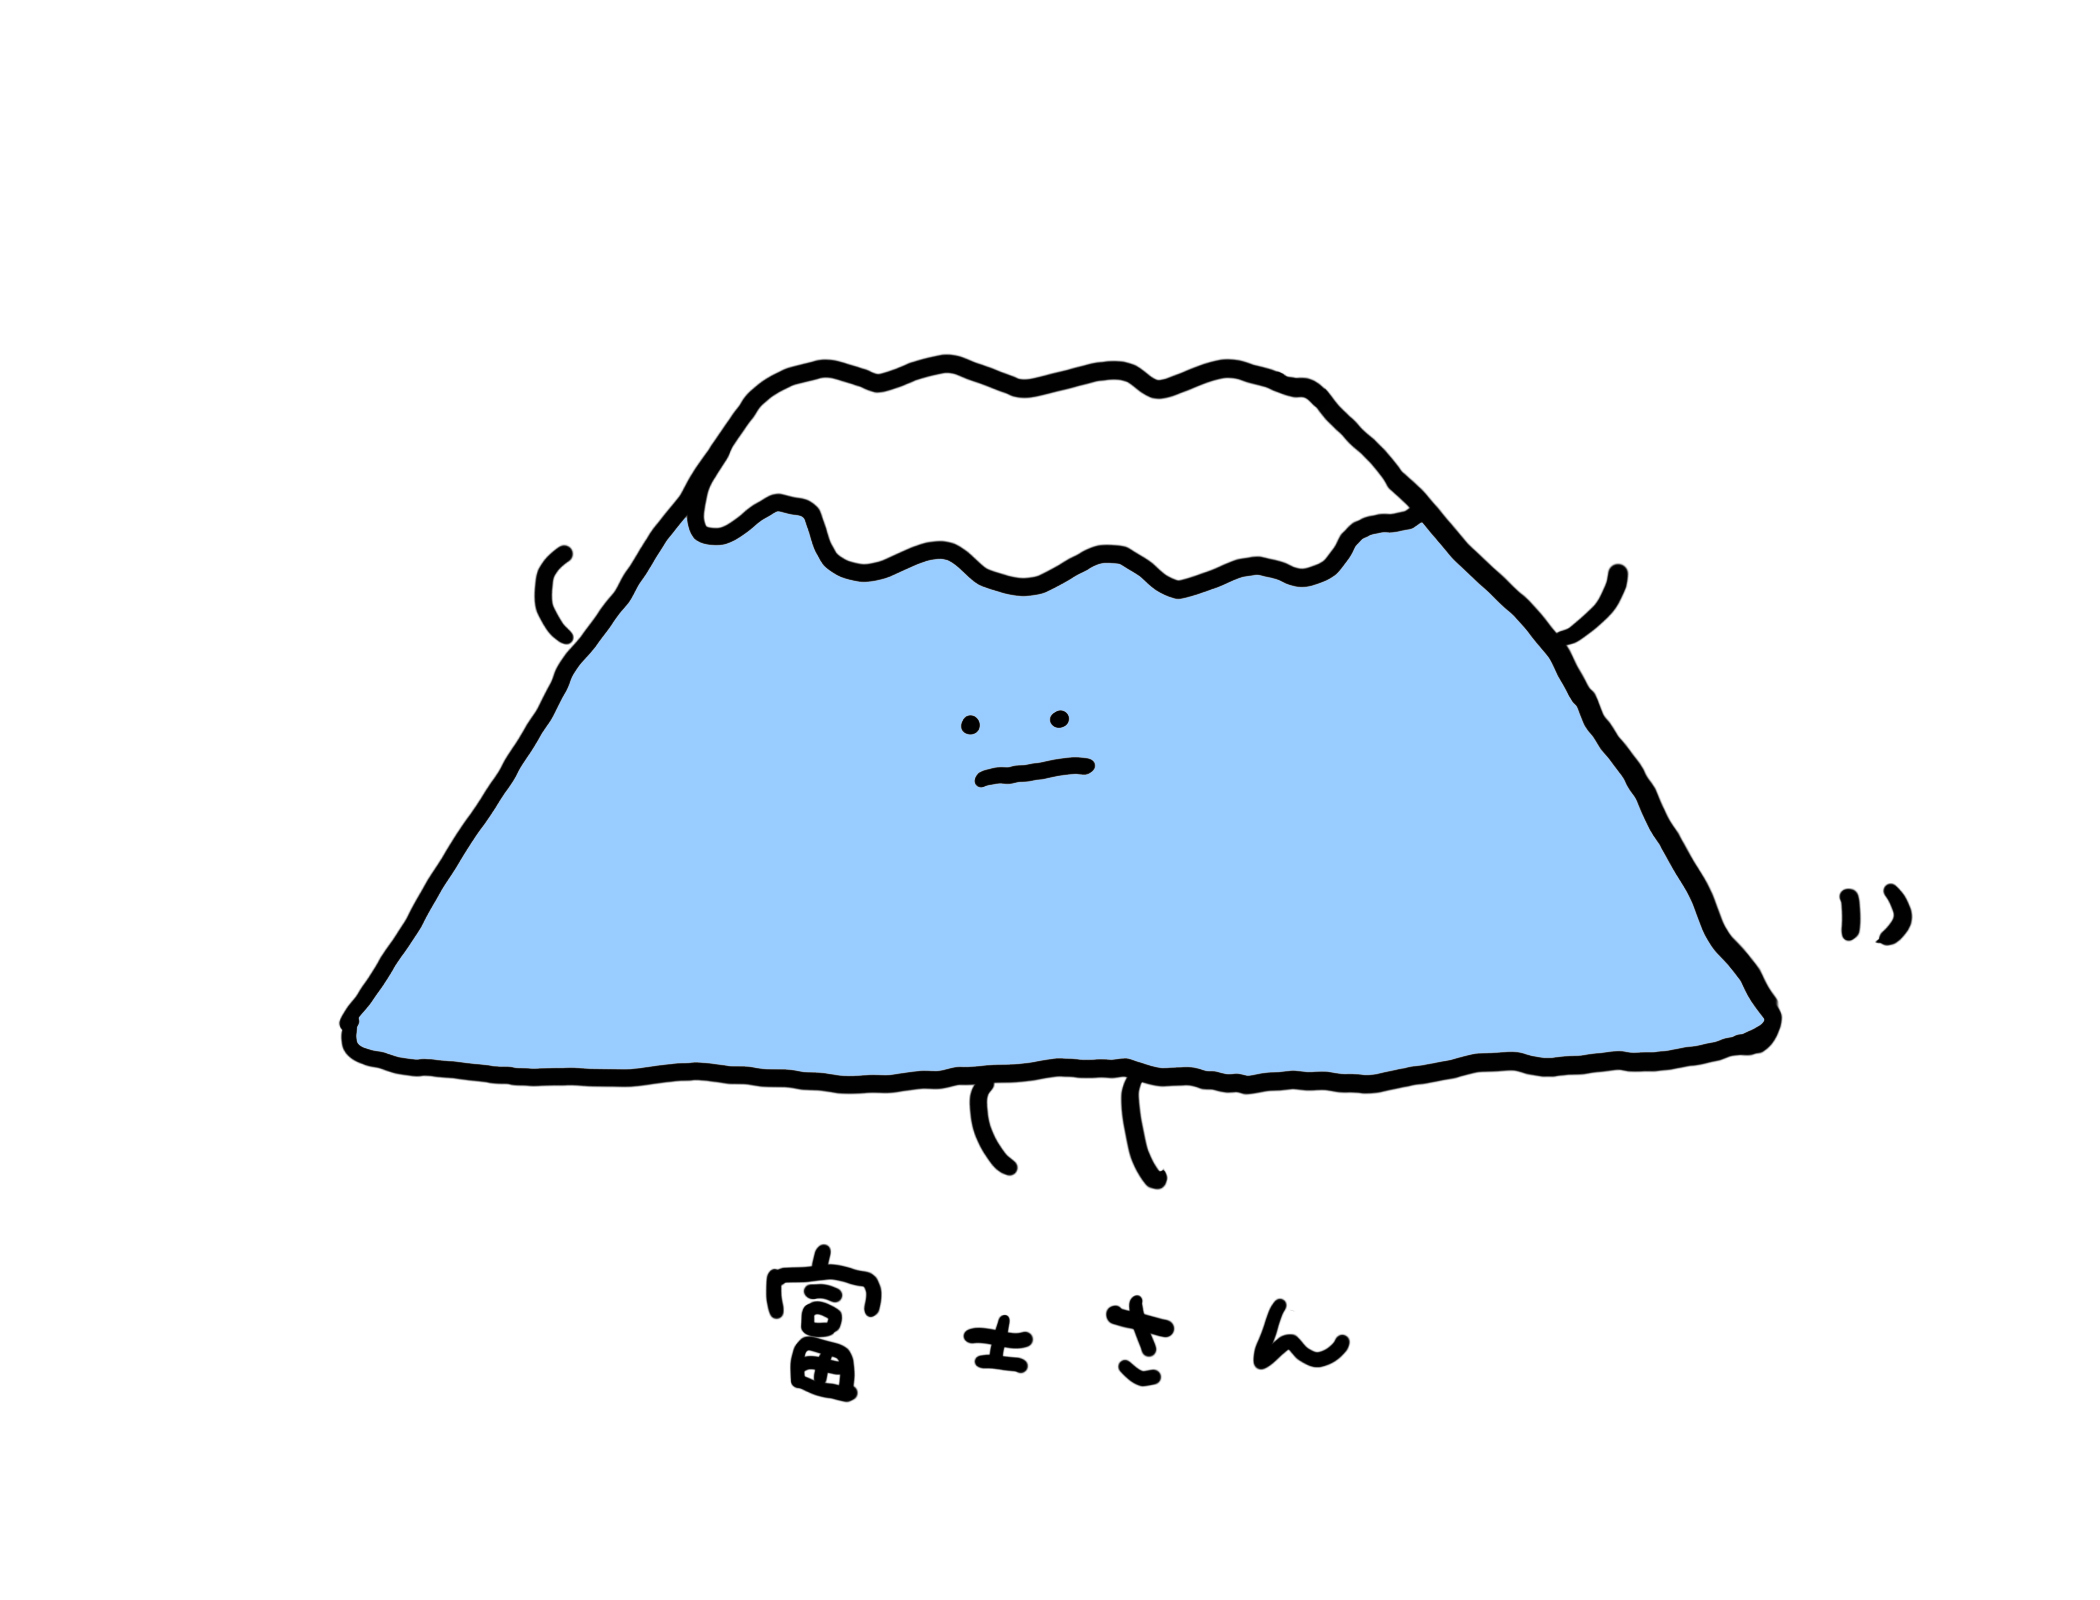 ハム 今日から人気絵師になるためにイラスト を投稿していきます 第1弾は 土曜日 雨なのに行ってしまったがために何もできなかった富士qへの恨み をかわいい富士山に込めました T Co Sgwi3gvpkx Twitter